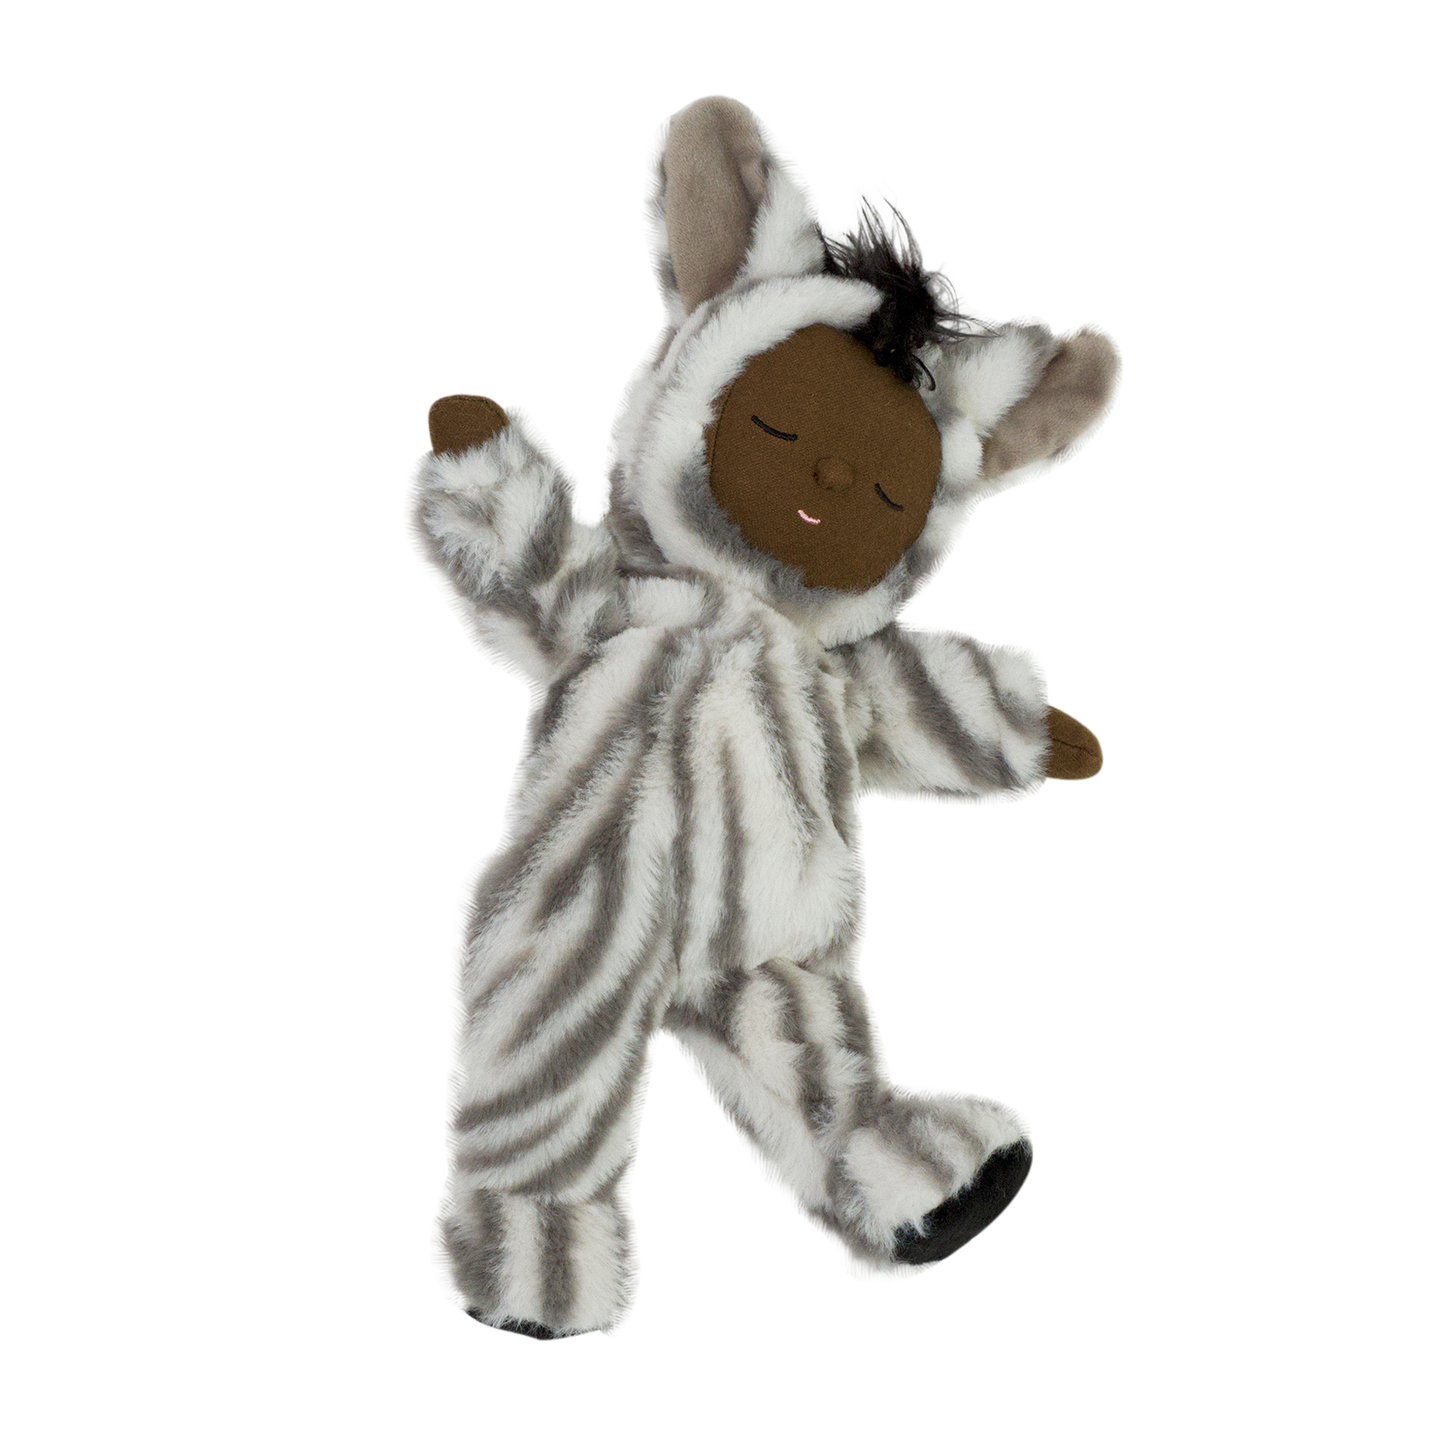 Olli Ella - Cozy Dozy Dinkum Doll Zebra Mini - Knuffel - Pop - Speelknuffel